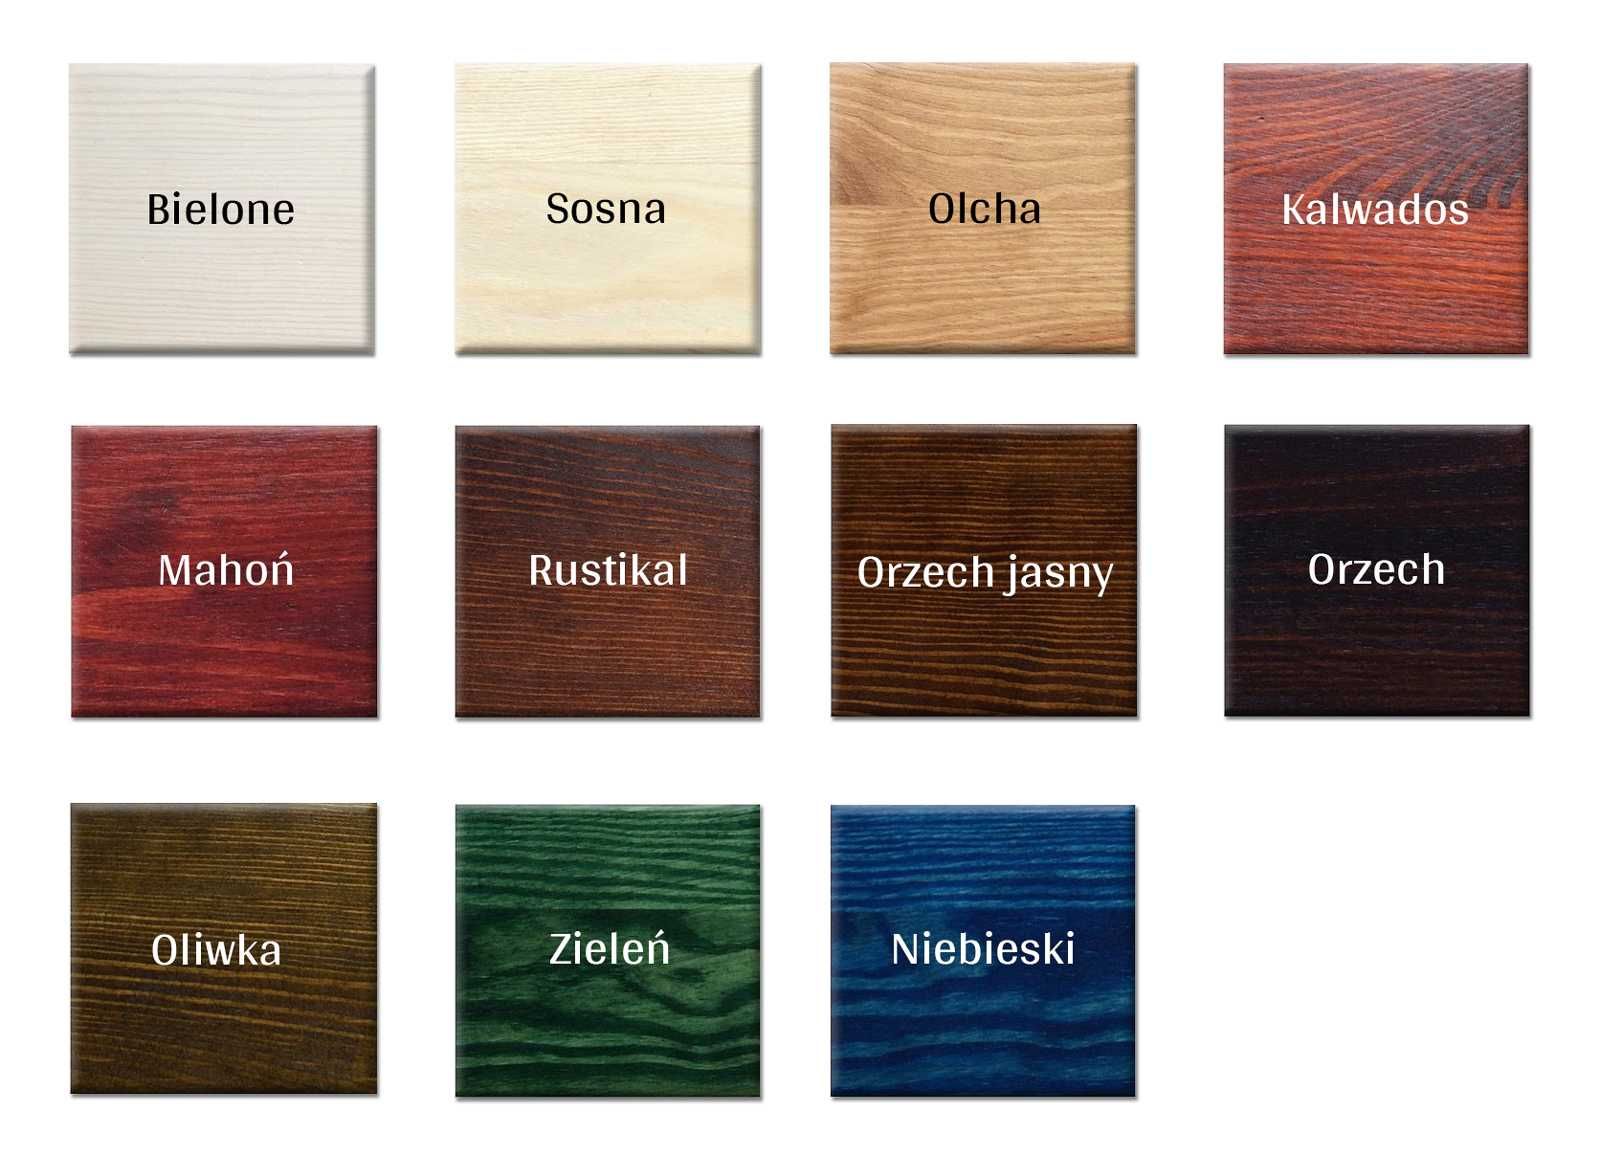 KLUPŚ Biurko drewniane sosnowe szuflady różne kolory wymiary